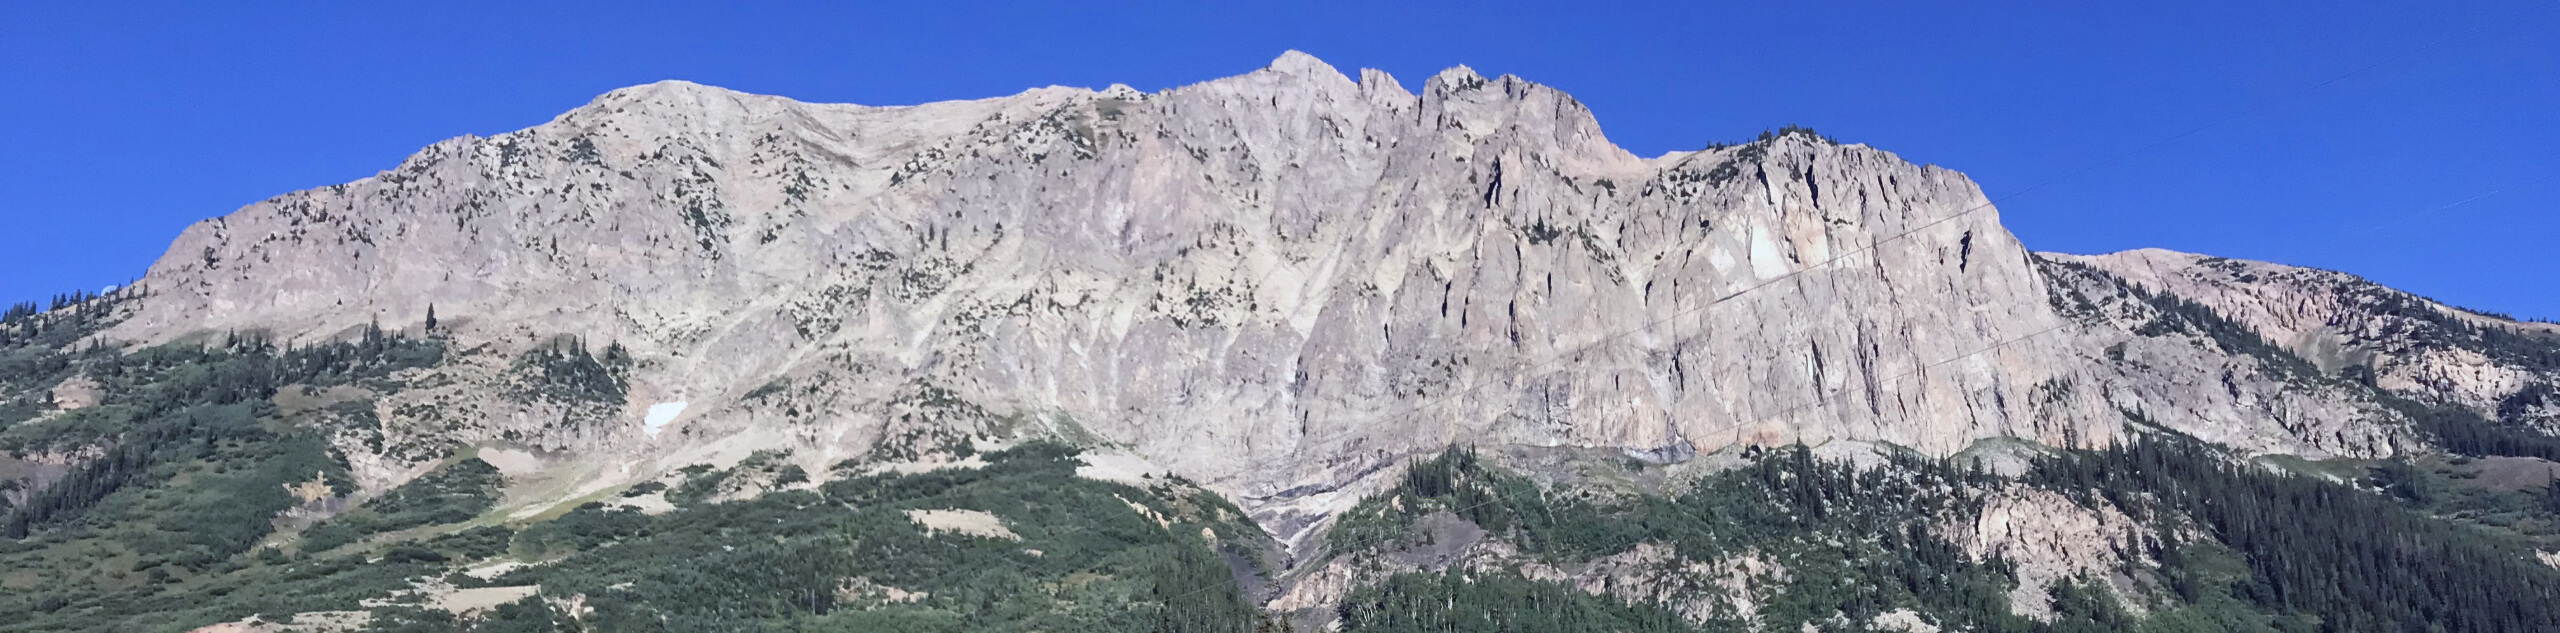 Gothic Mountain via Trail 403